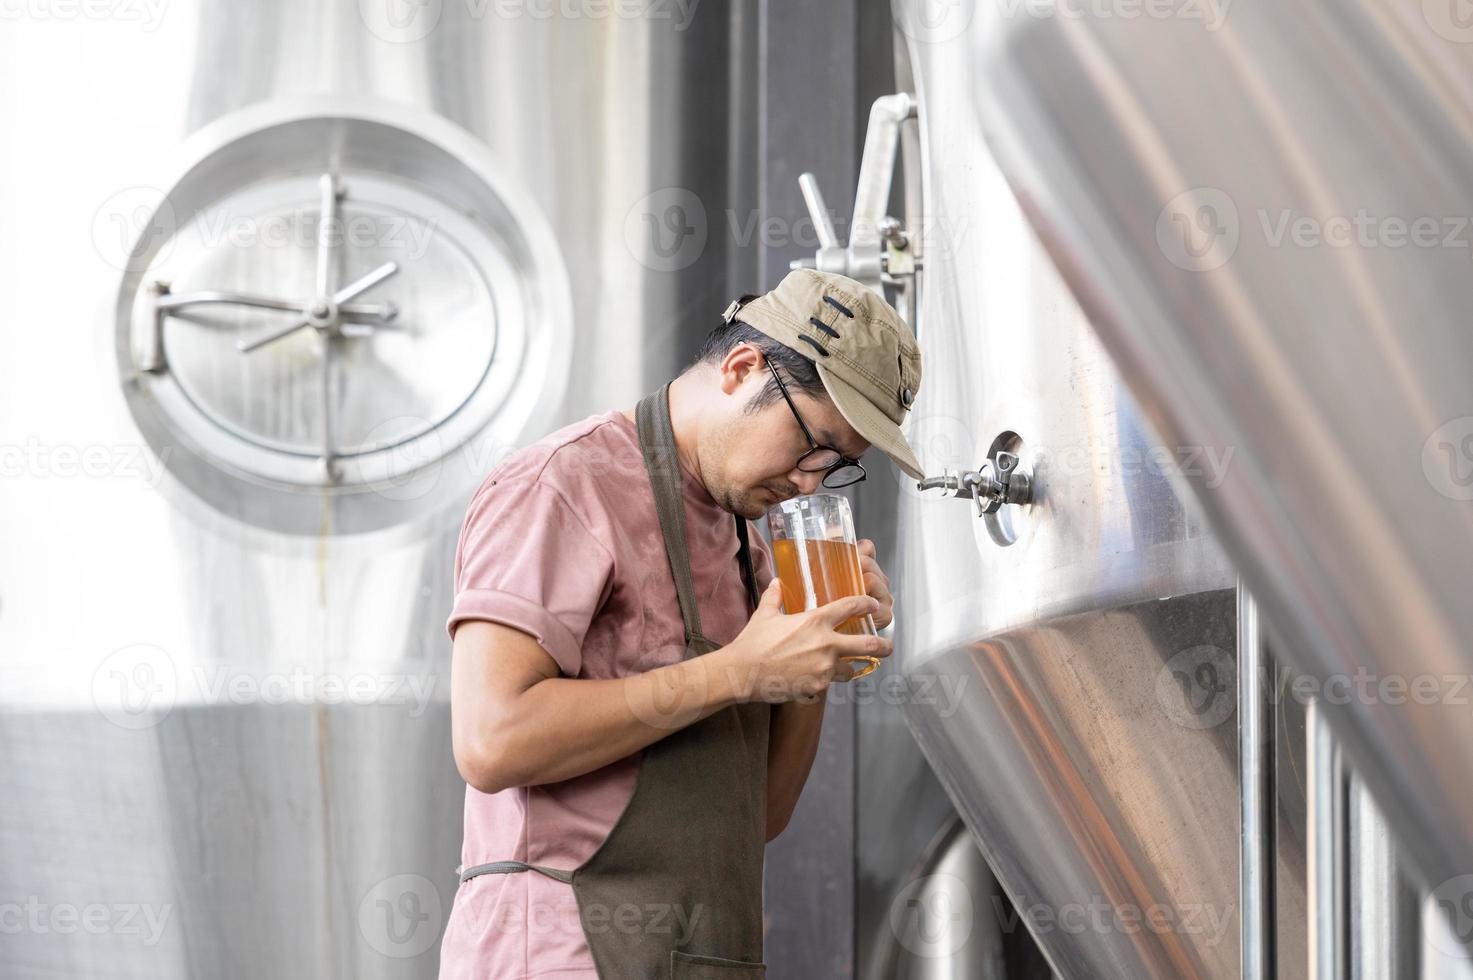 jovem trabalhador asiático inspecionando a qualidade da cervejaria com um copo de cerveja artesanal avaliando a aparência visual após a preparação enquanto trabalhava em uma cervejaria artesanal de processamento. foto